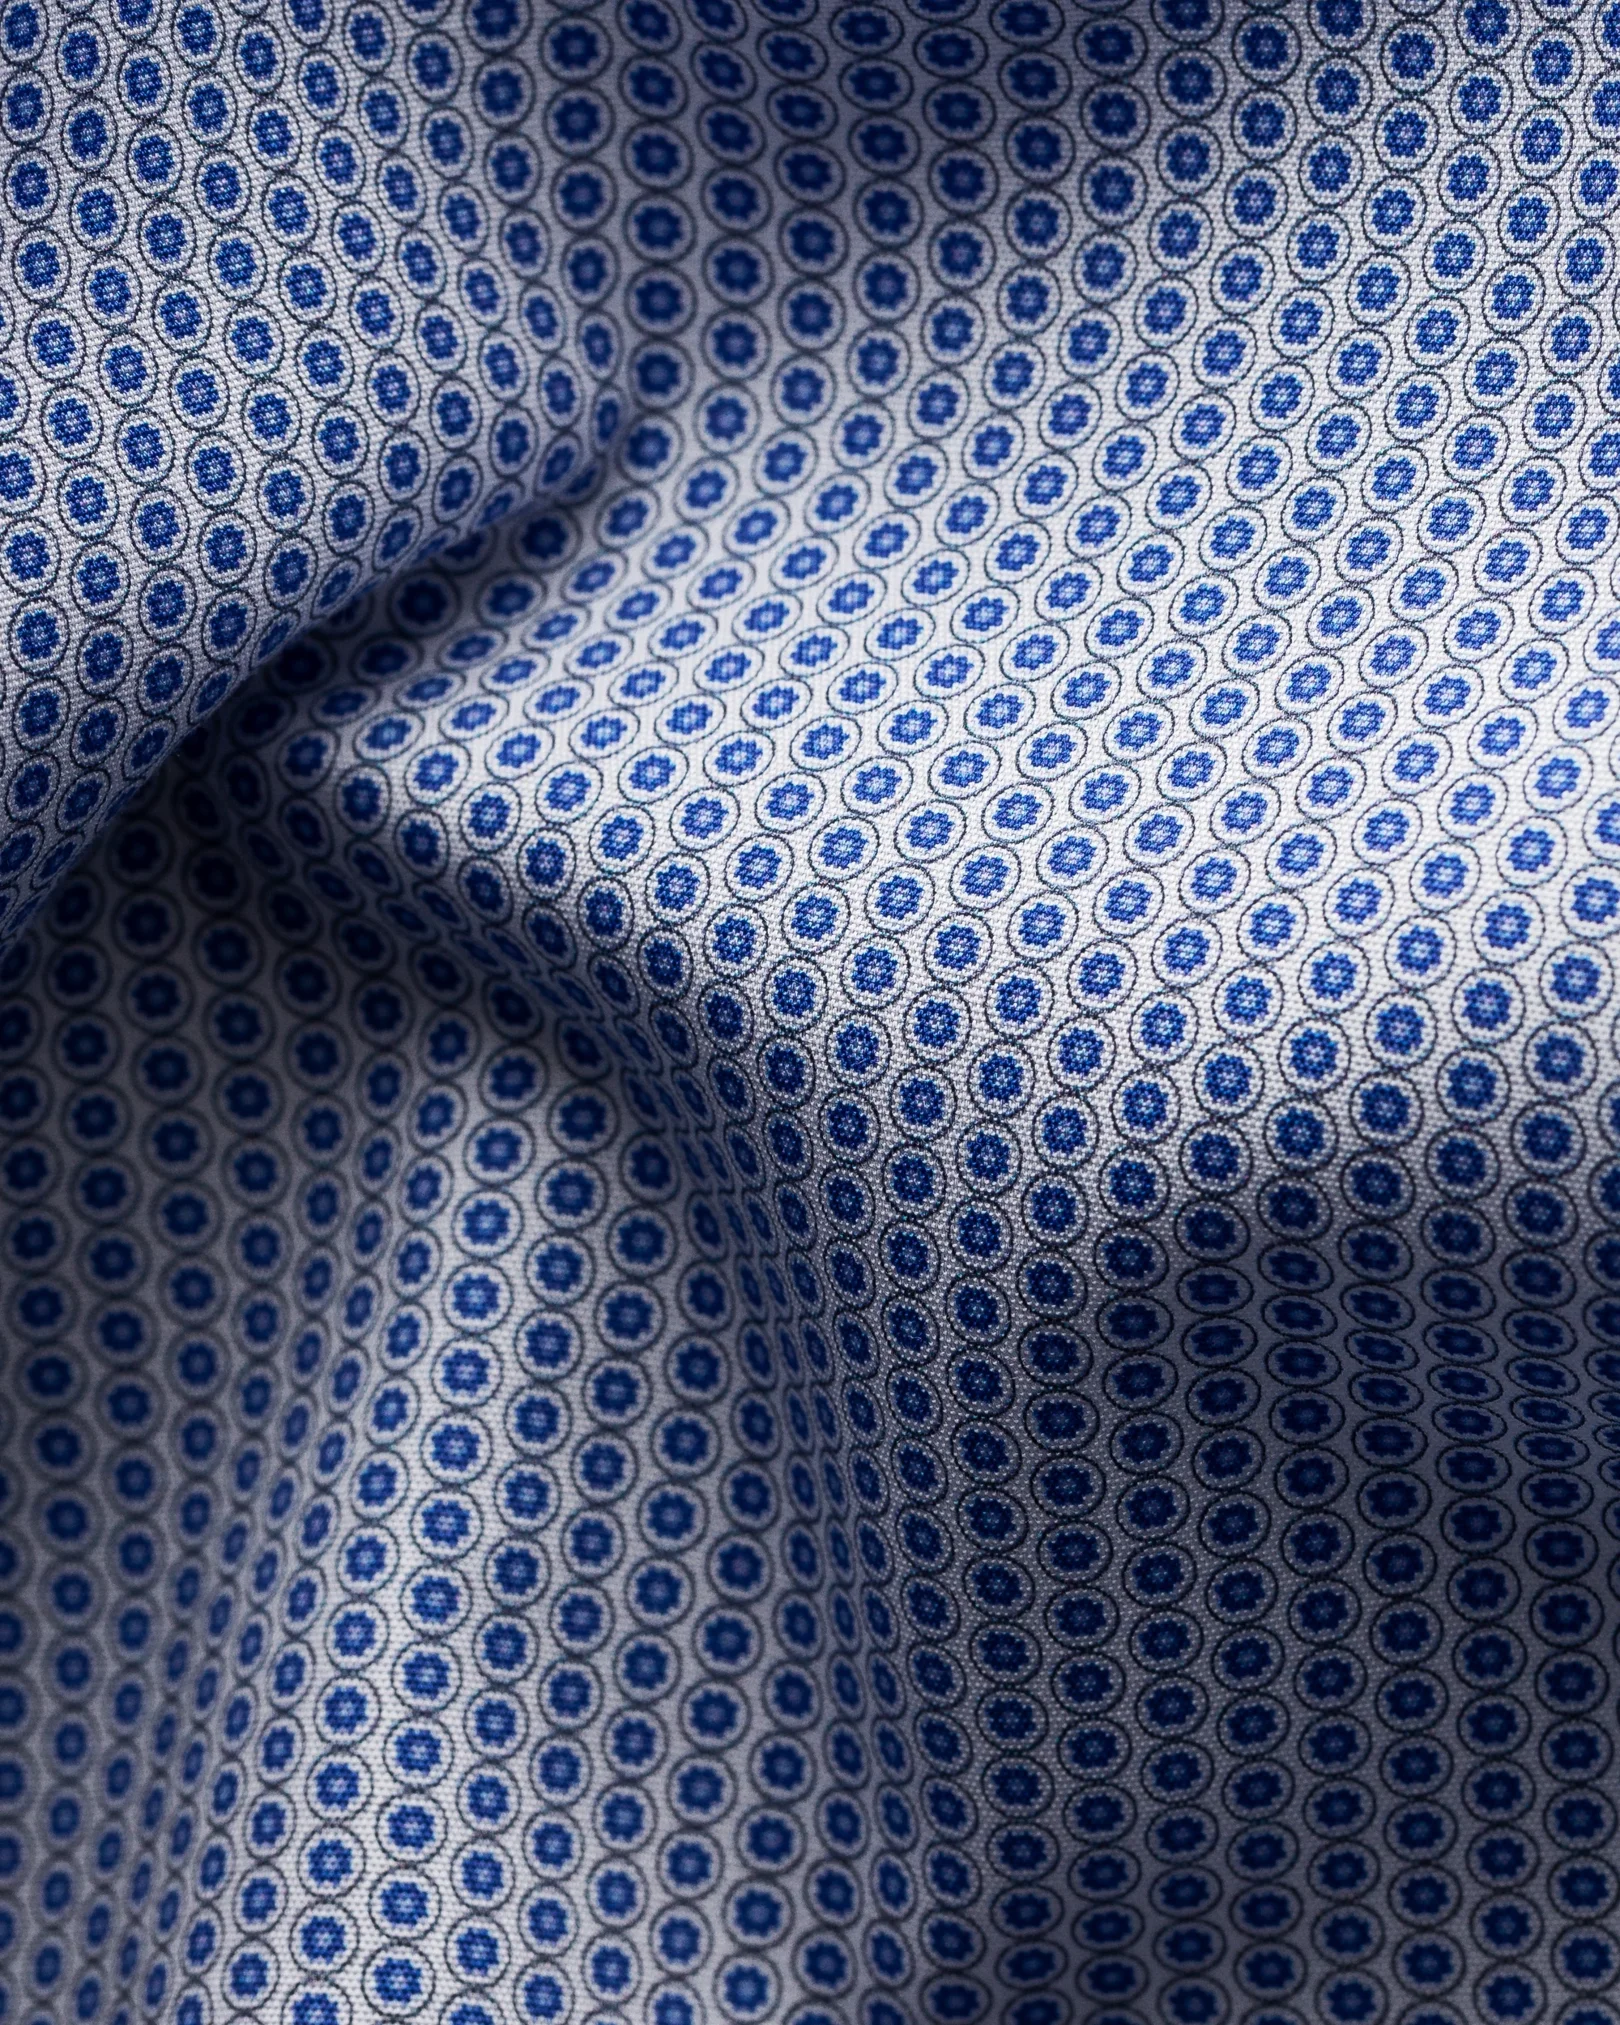 Eton - blue glass print poplin shirt short sleeve